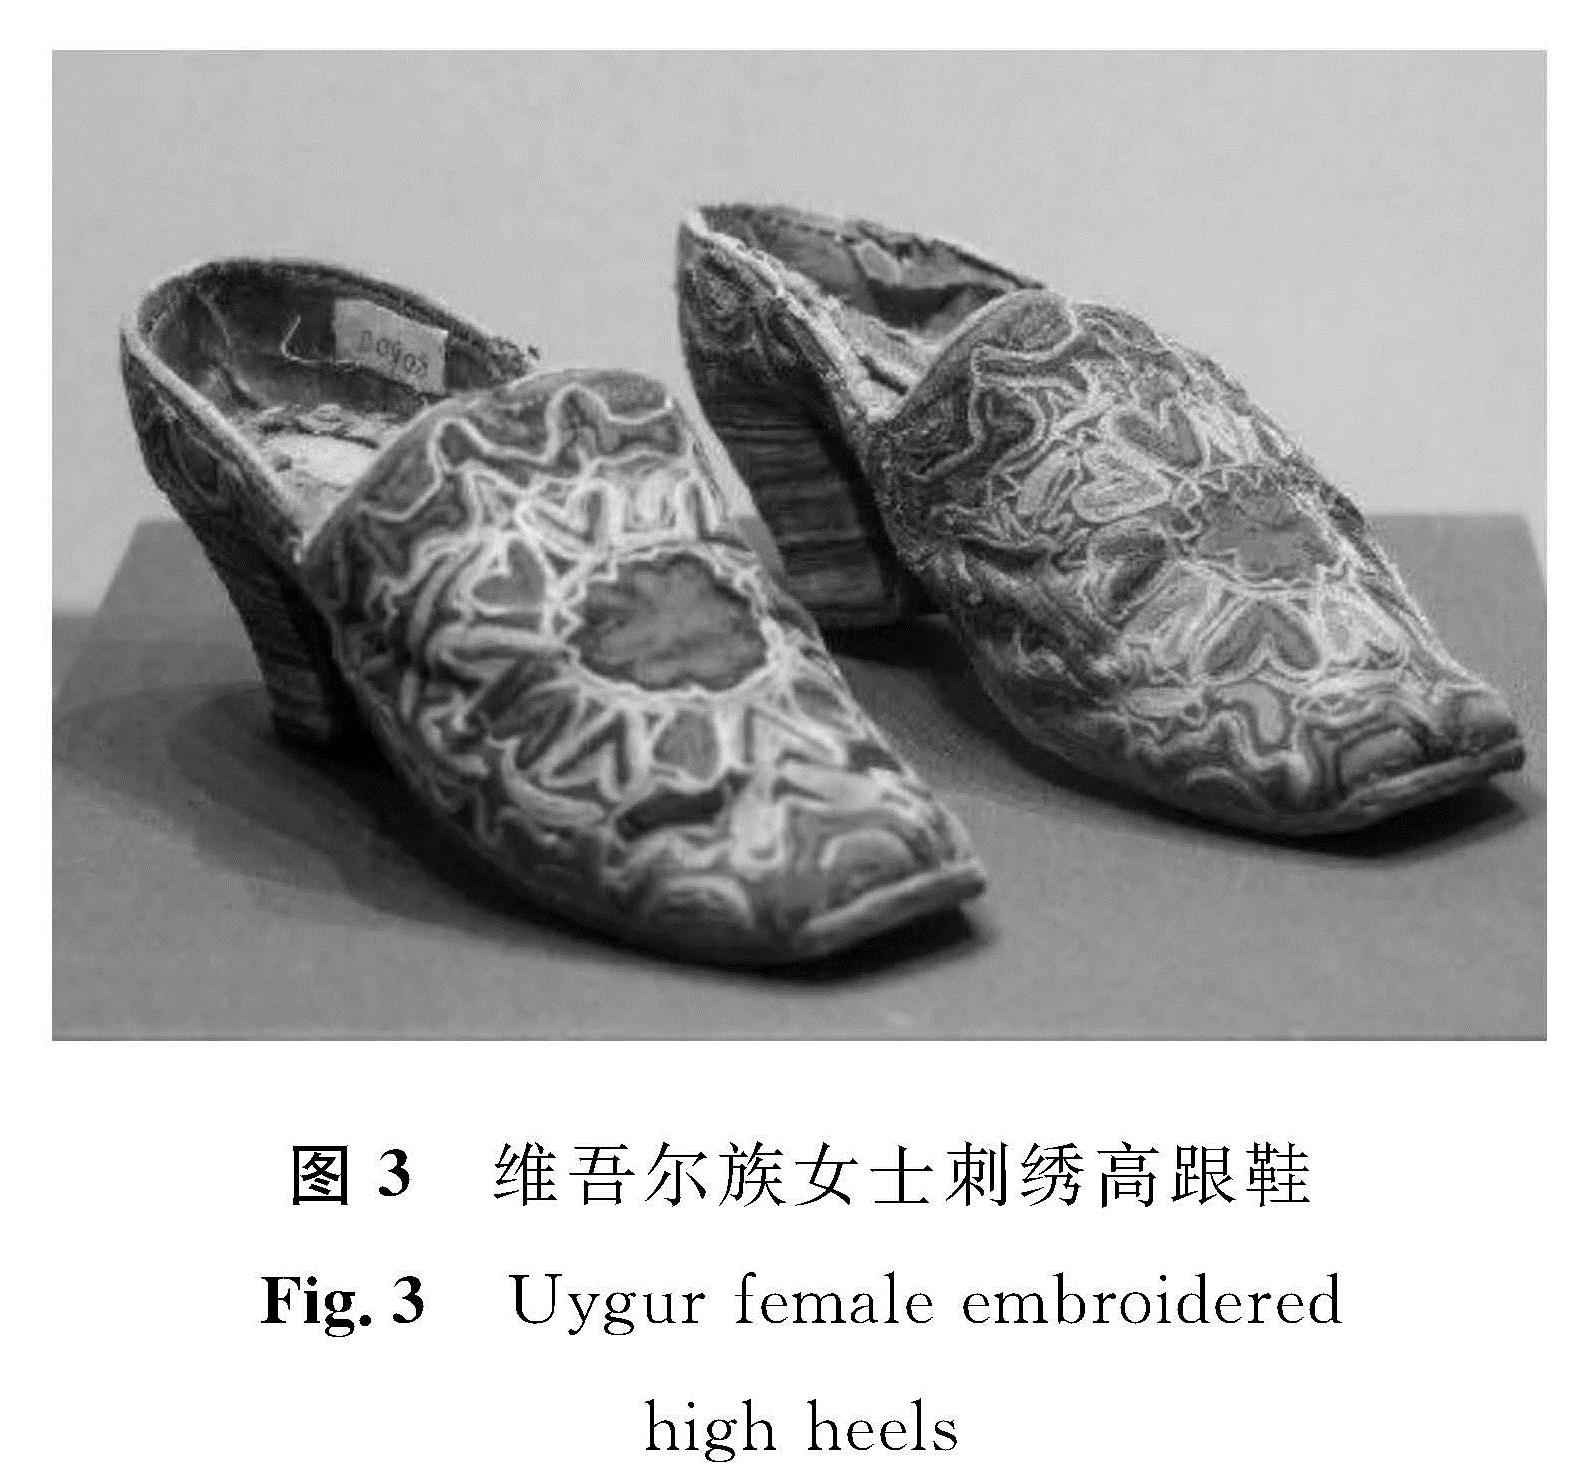 图3 维吾尔族女士刺绣高跟鞋<br/>Fig.3 Uygur female embroidered high heels